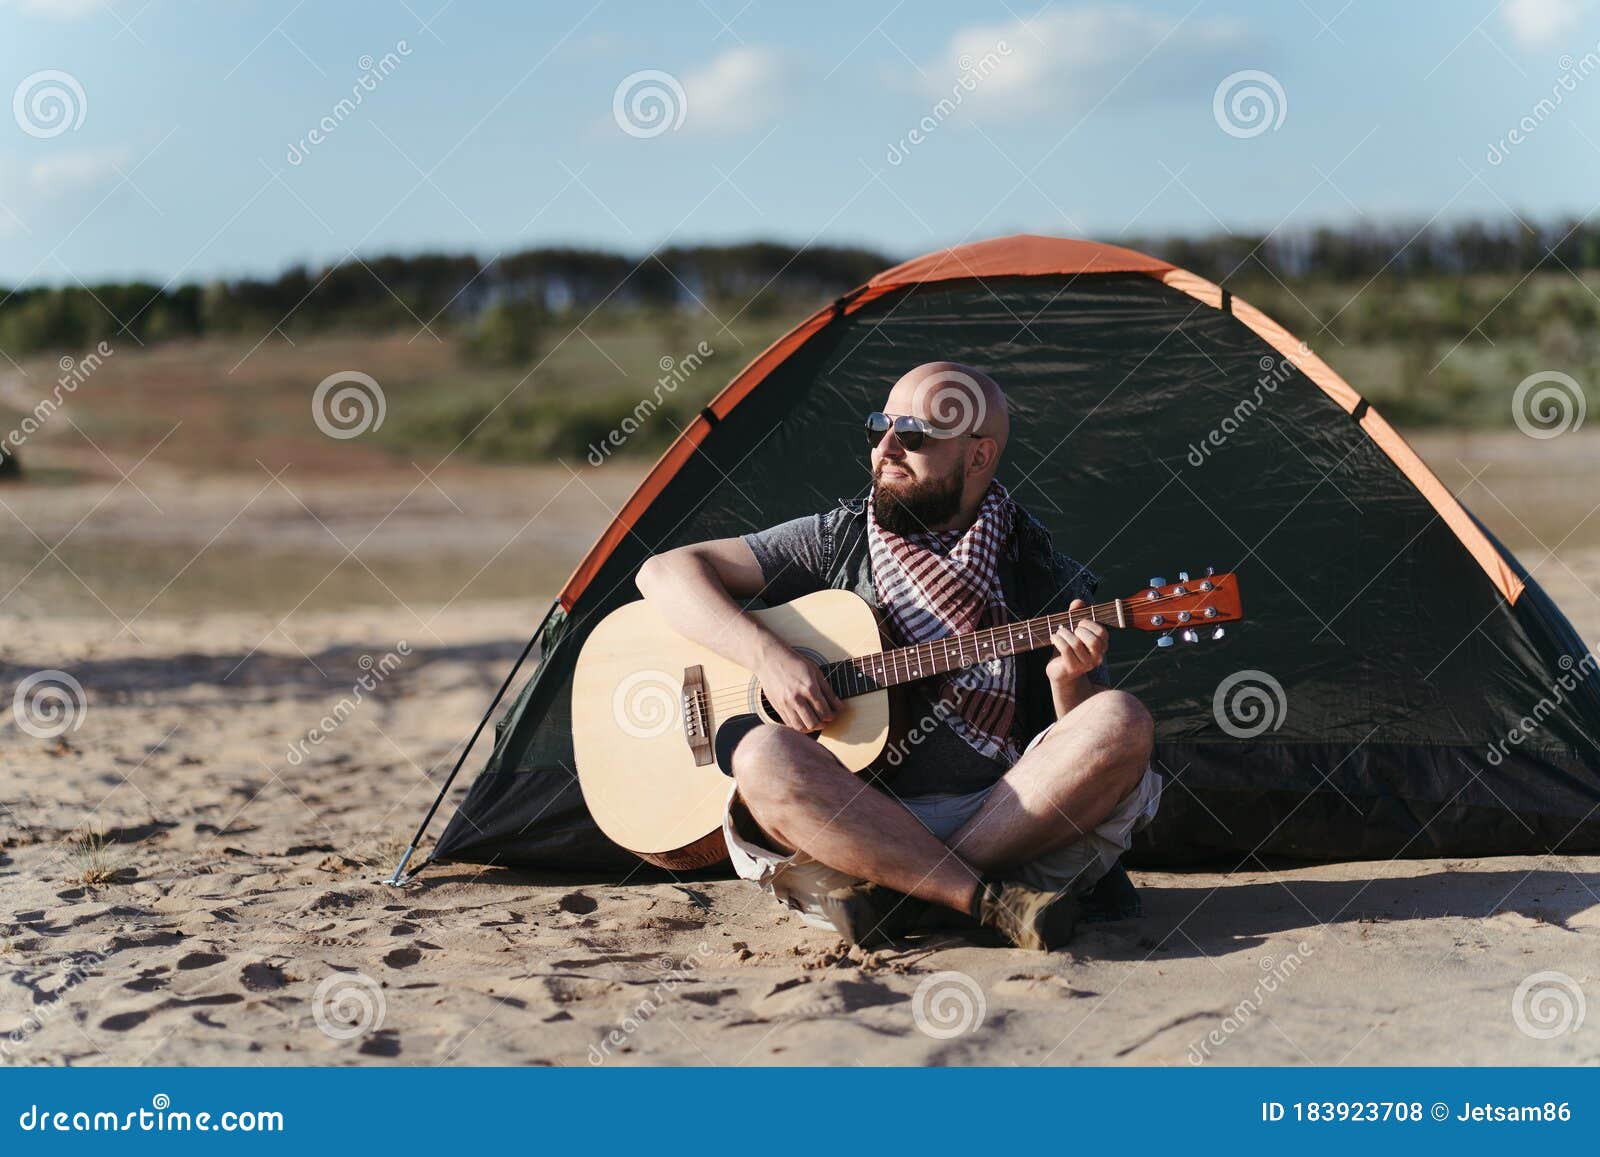 Homme Qui Joue De La Guitare Et De Camping Dans Le Désert Photo stock -  Image du vacances, découvrez: 183923708